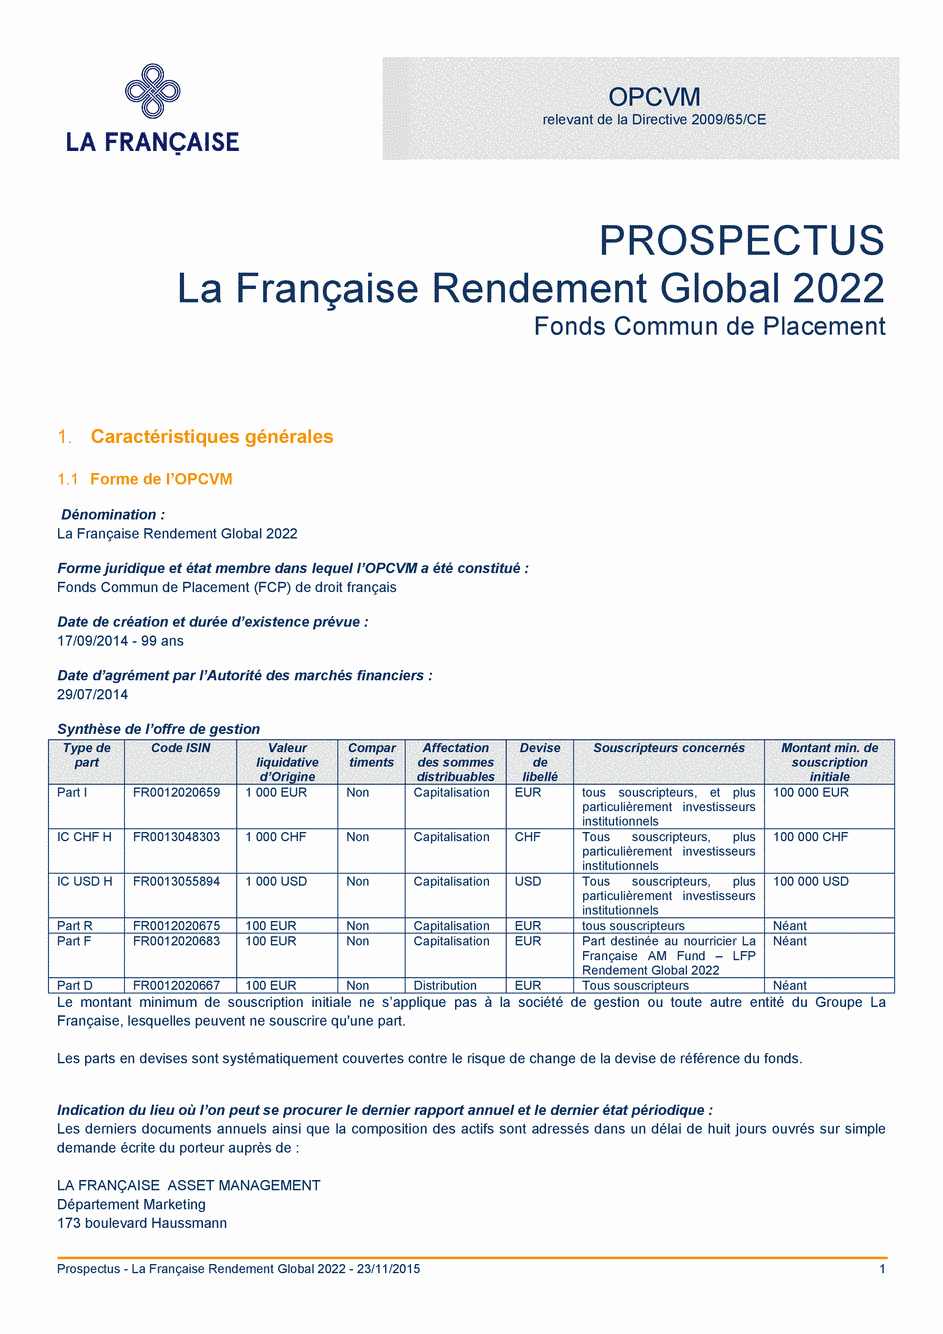 Prospectus La Française Rendement Global 2022 - Part I - 23/11/2015 - Français